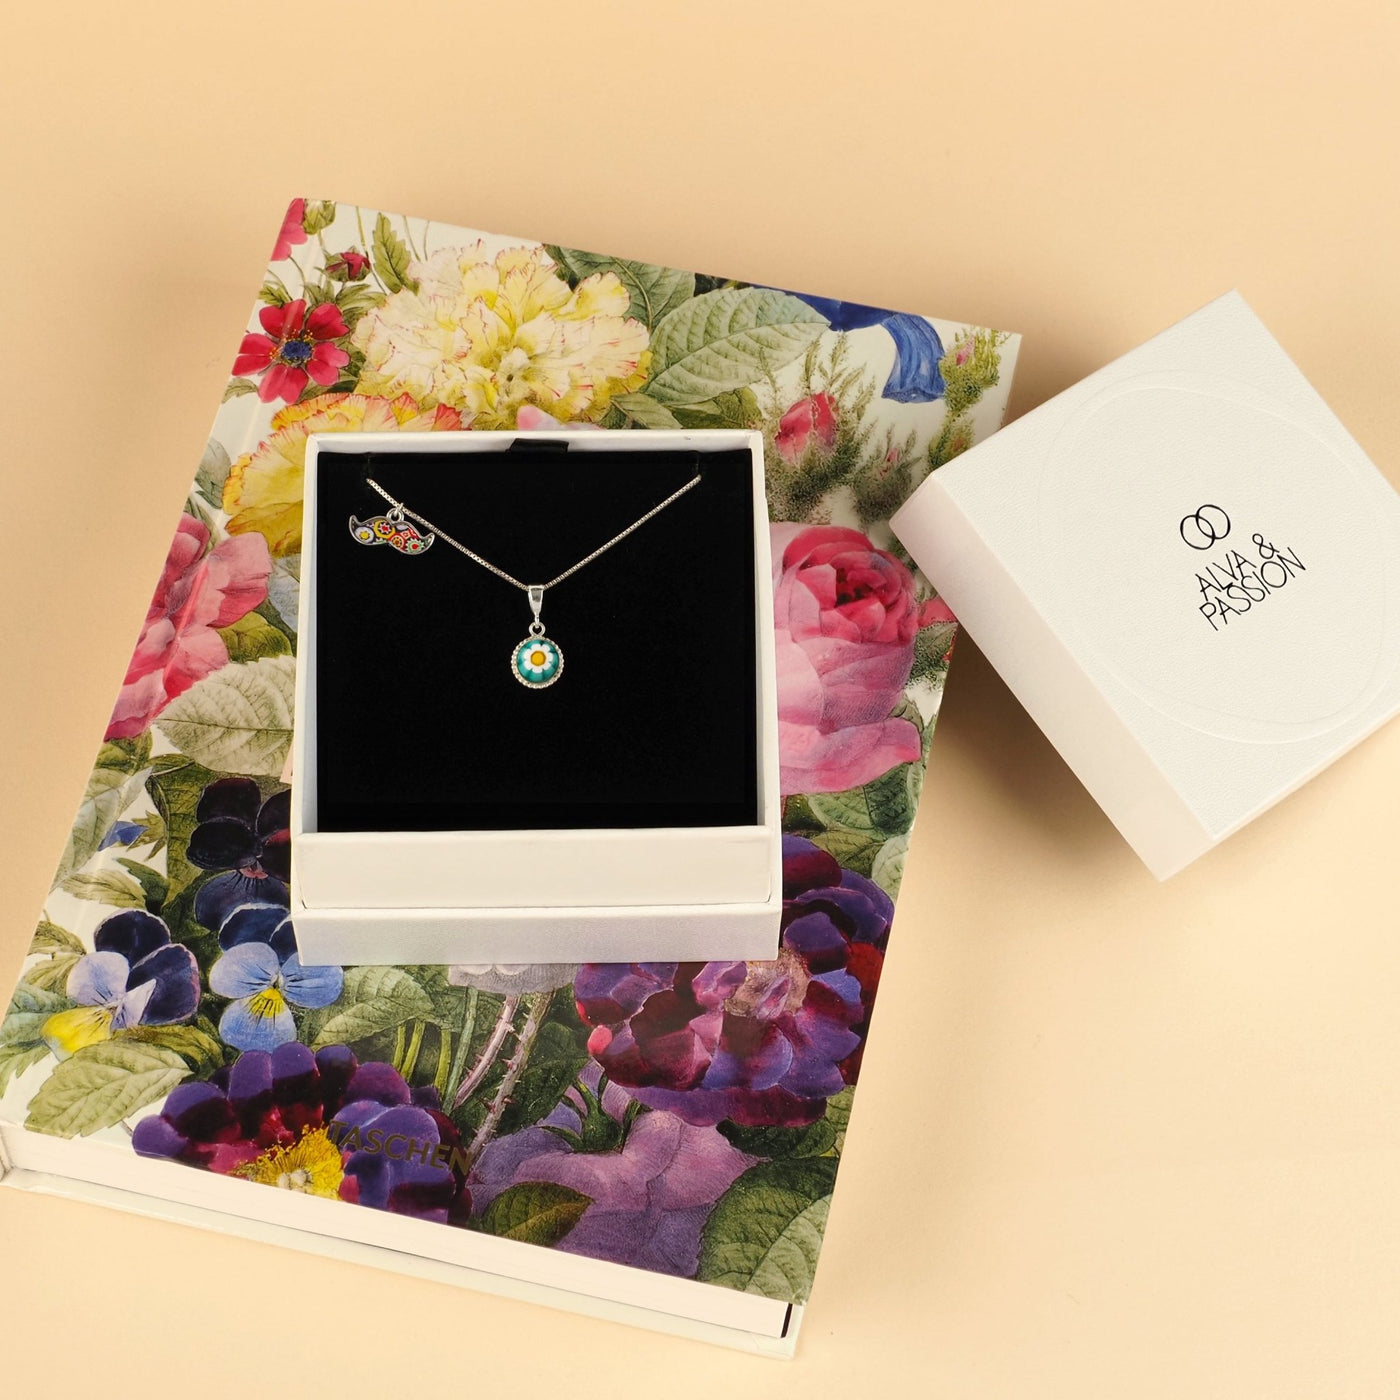 Art Flower in Bloom Necklace - Cyan Daisy Flower - Pendant Necklace